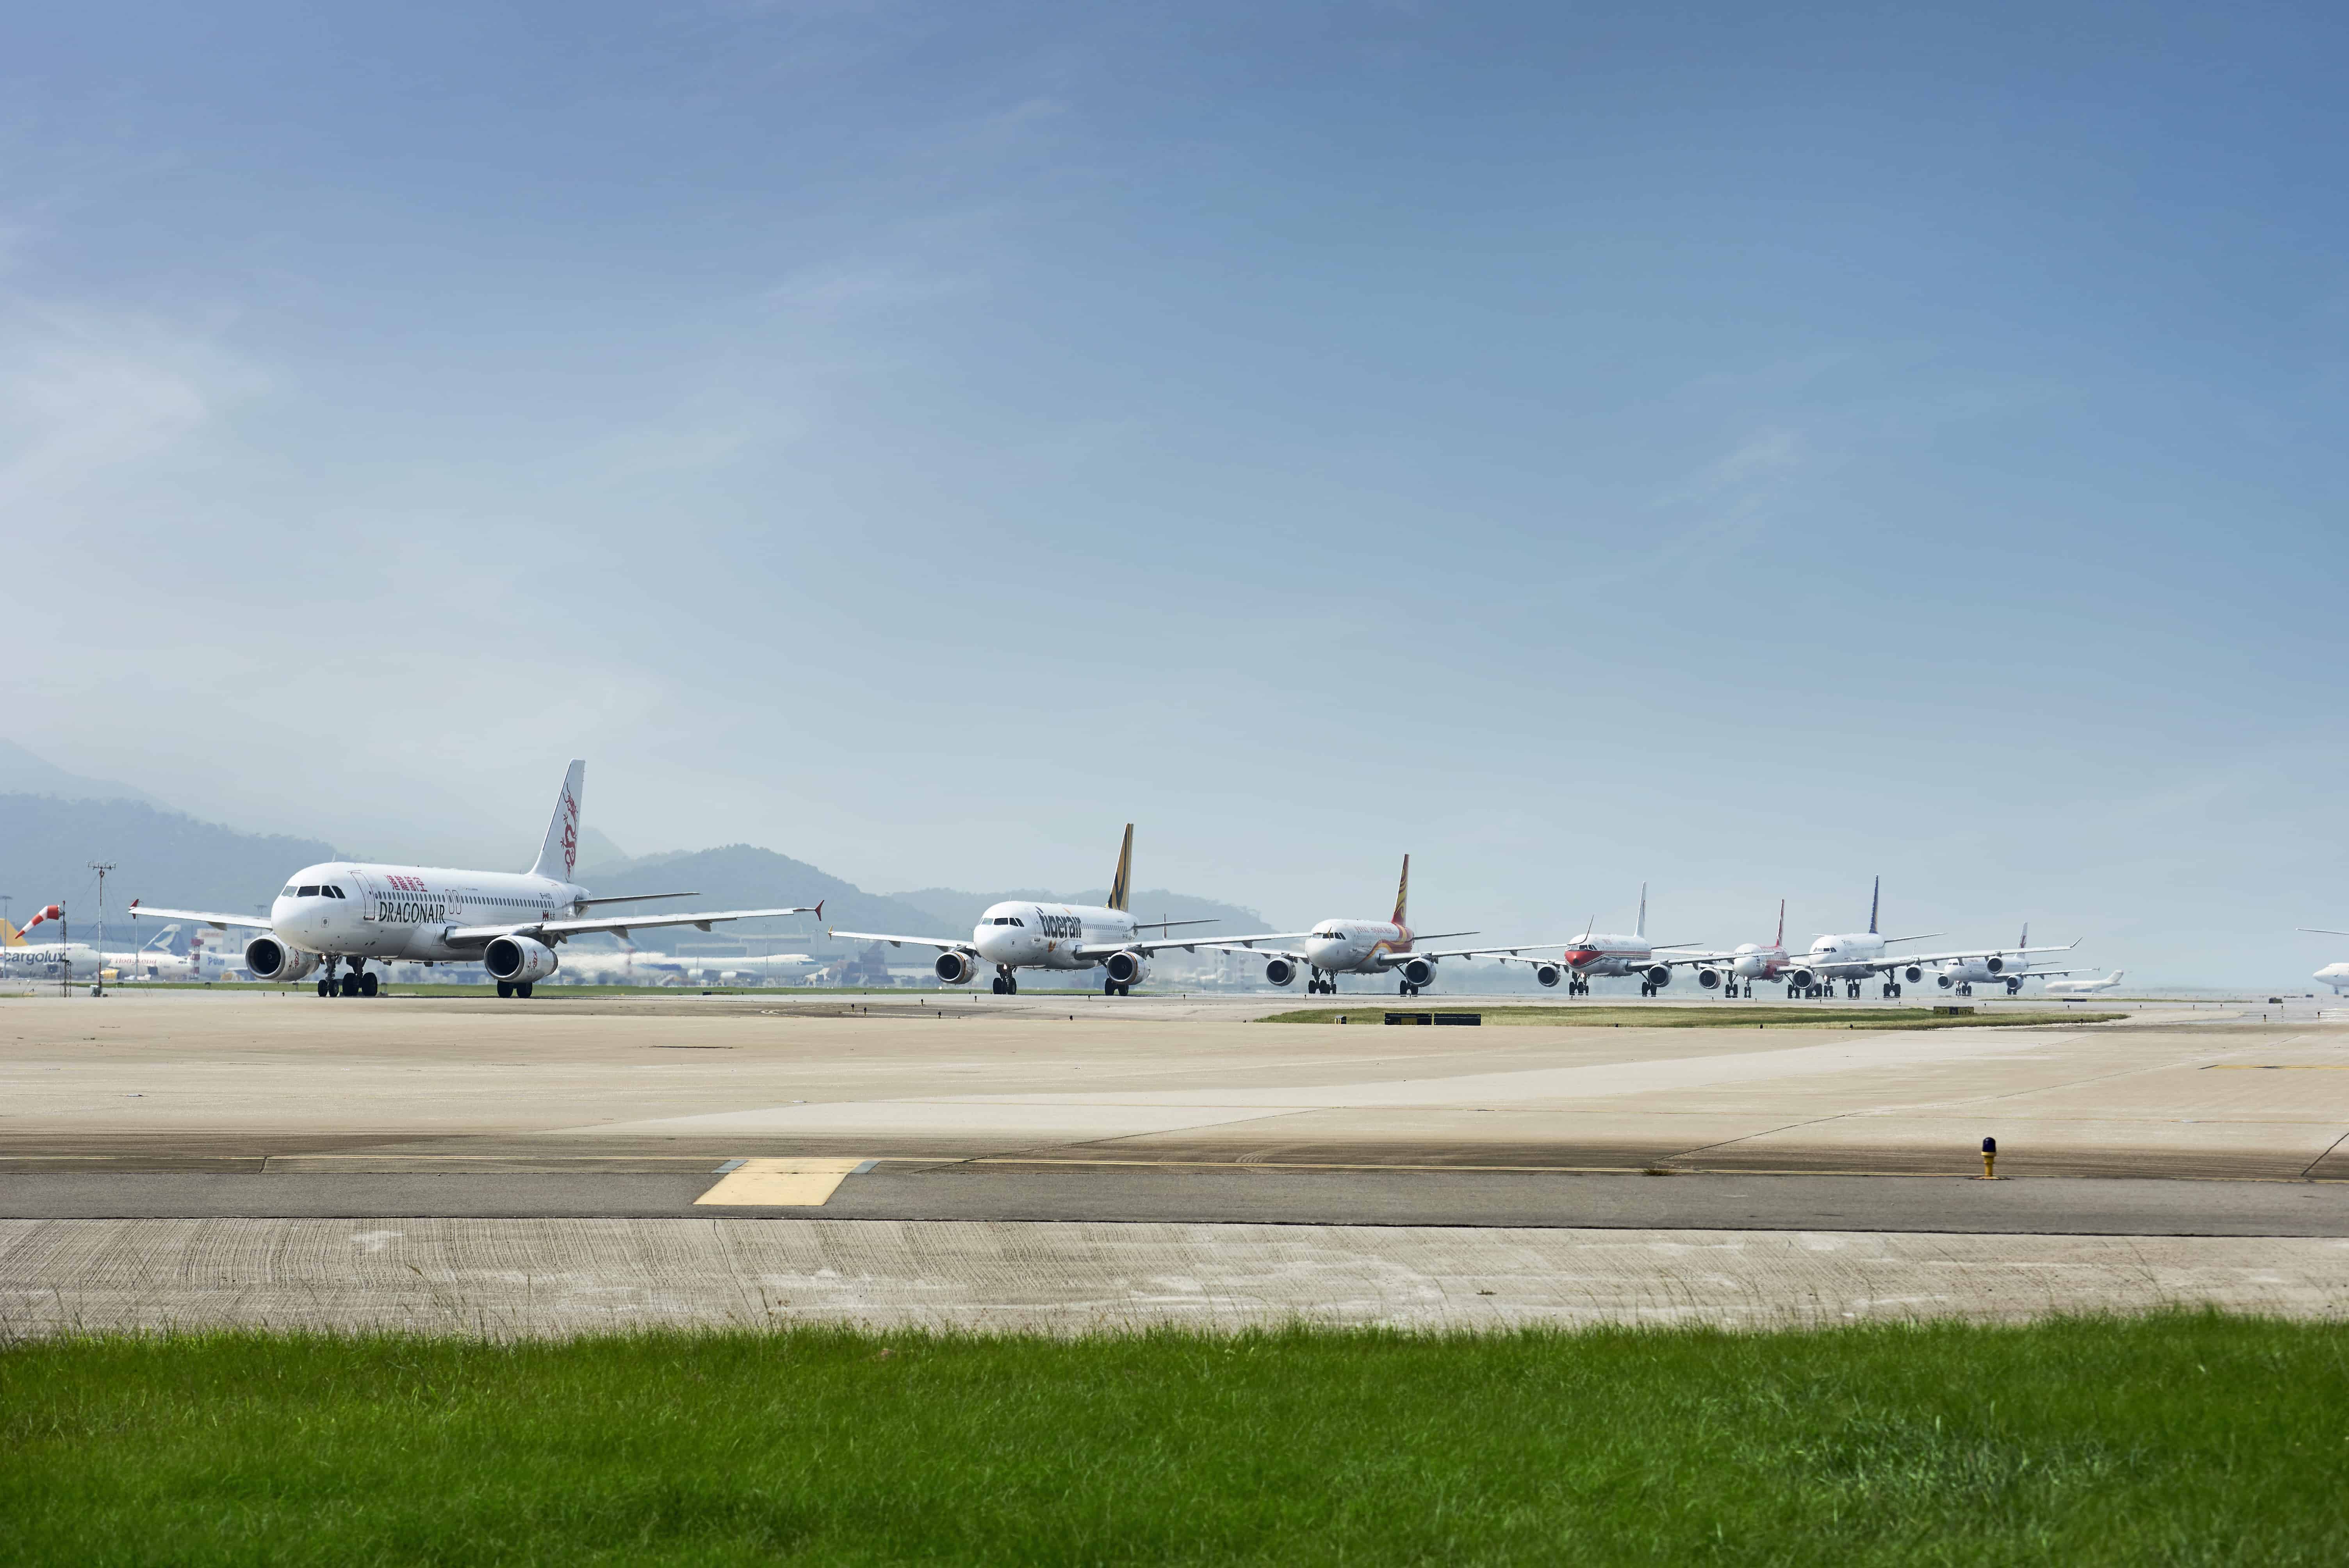 The airfield at Hong Kong International Airport